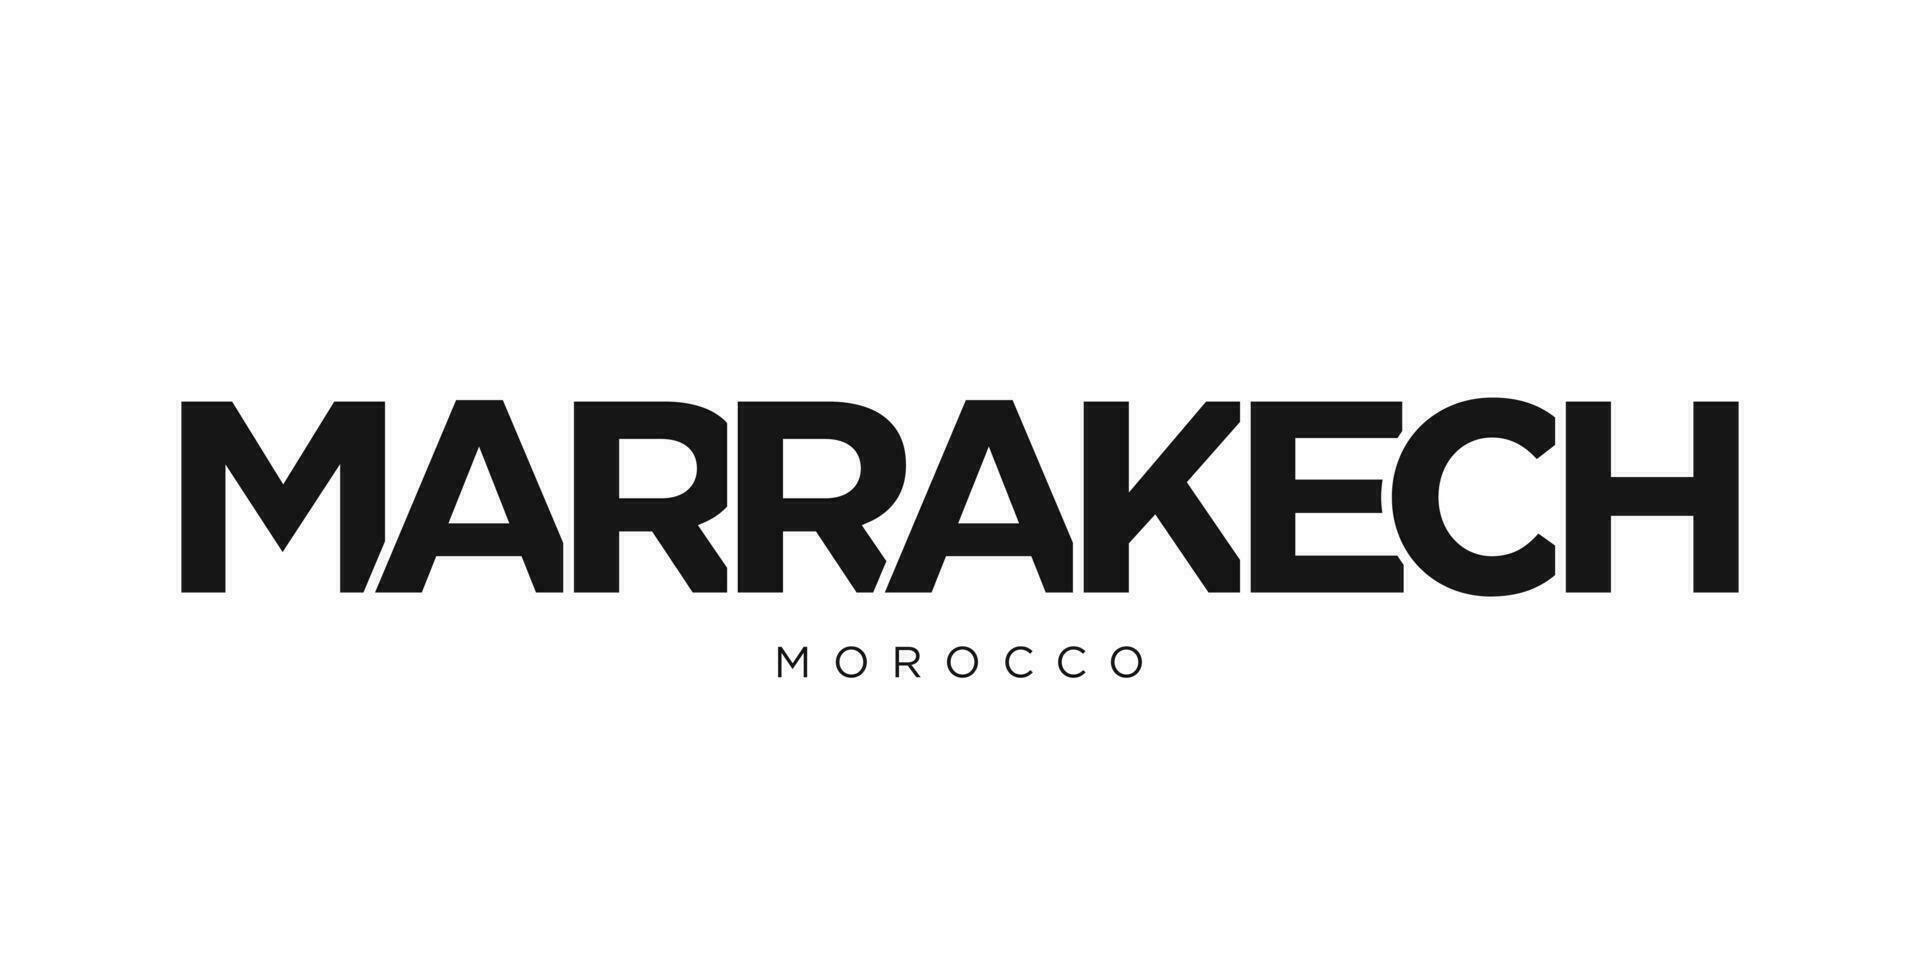 Marrakech dans le Maroc emblème. le conception Caractéristiques une géométrique style, vecteur illustration avec audacieux typographie dans une moderne Police de caractère. le graphique slogan caractères.